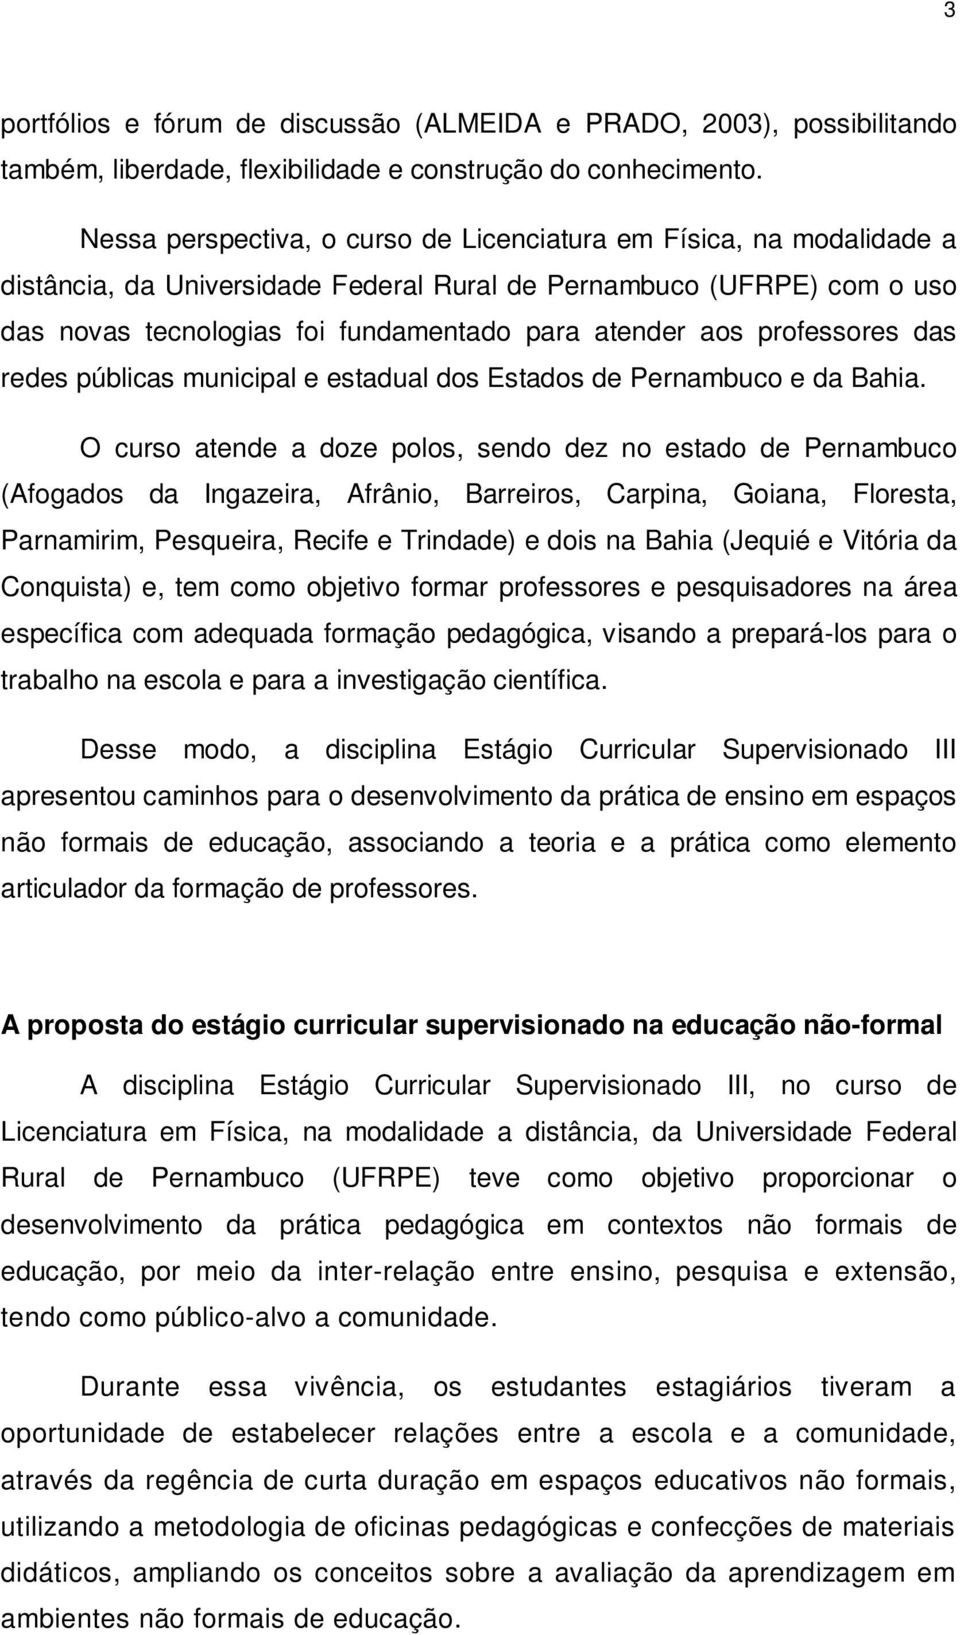 professores das redes públicas municipal e estadual dos Estados de Pernambuco e da Bahia.